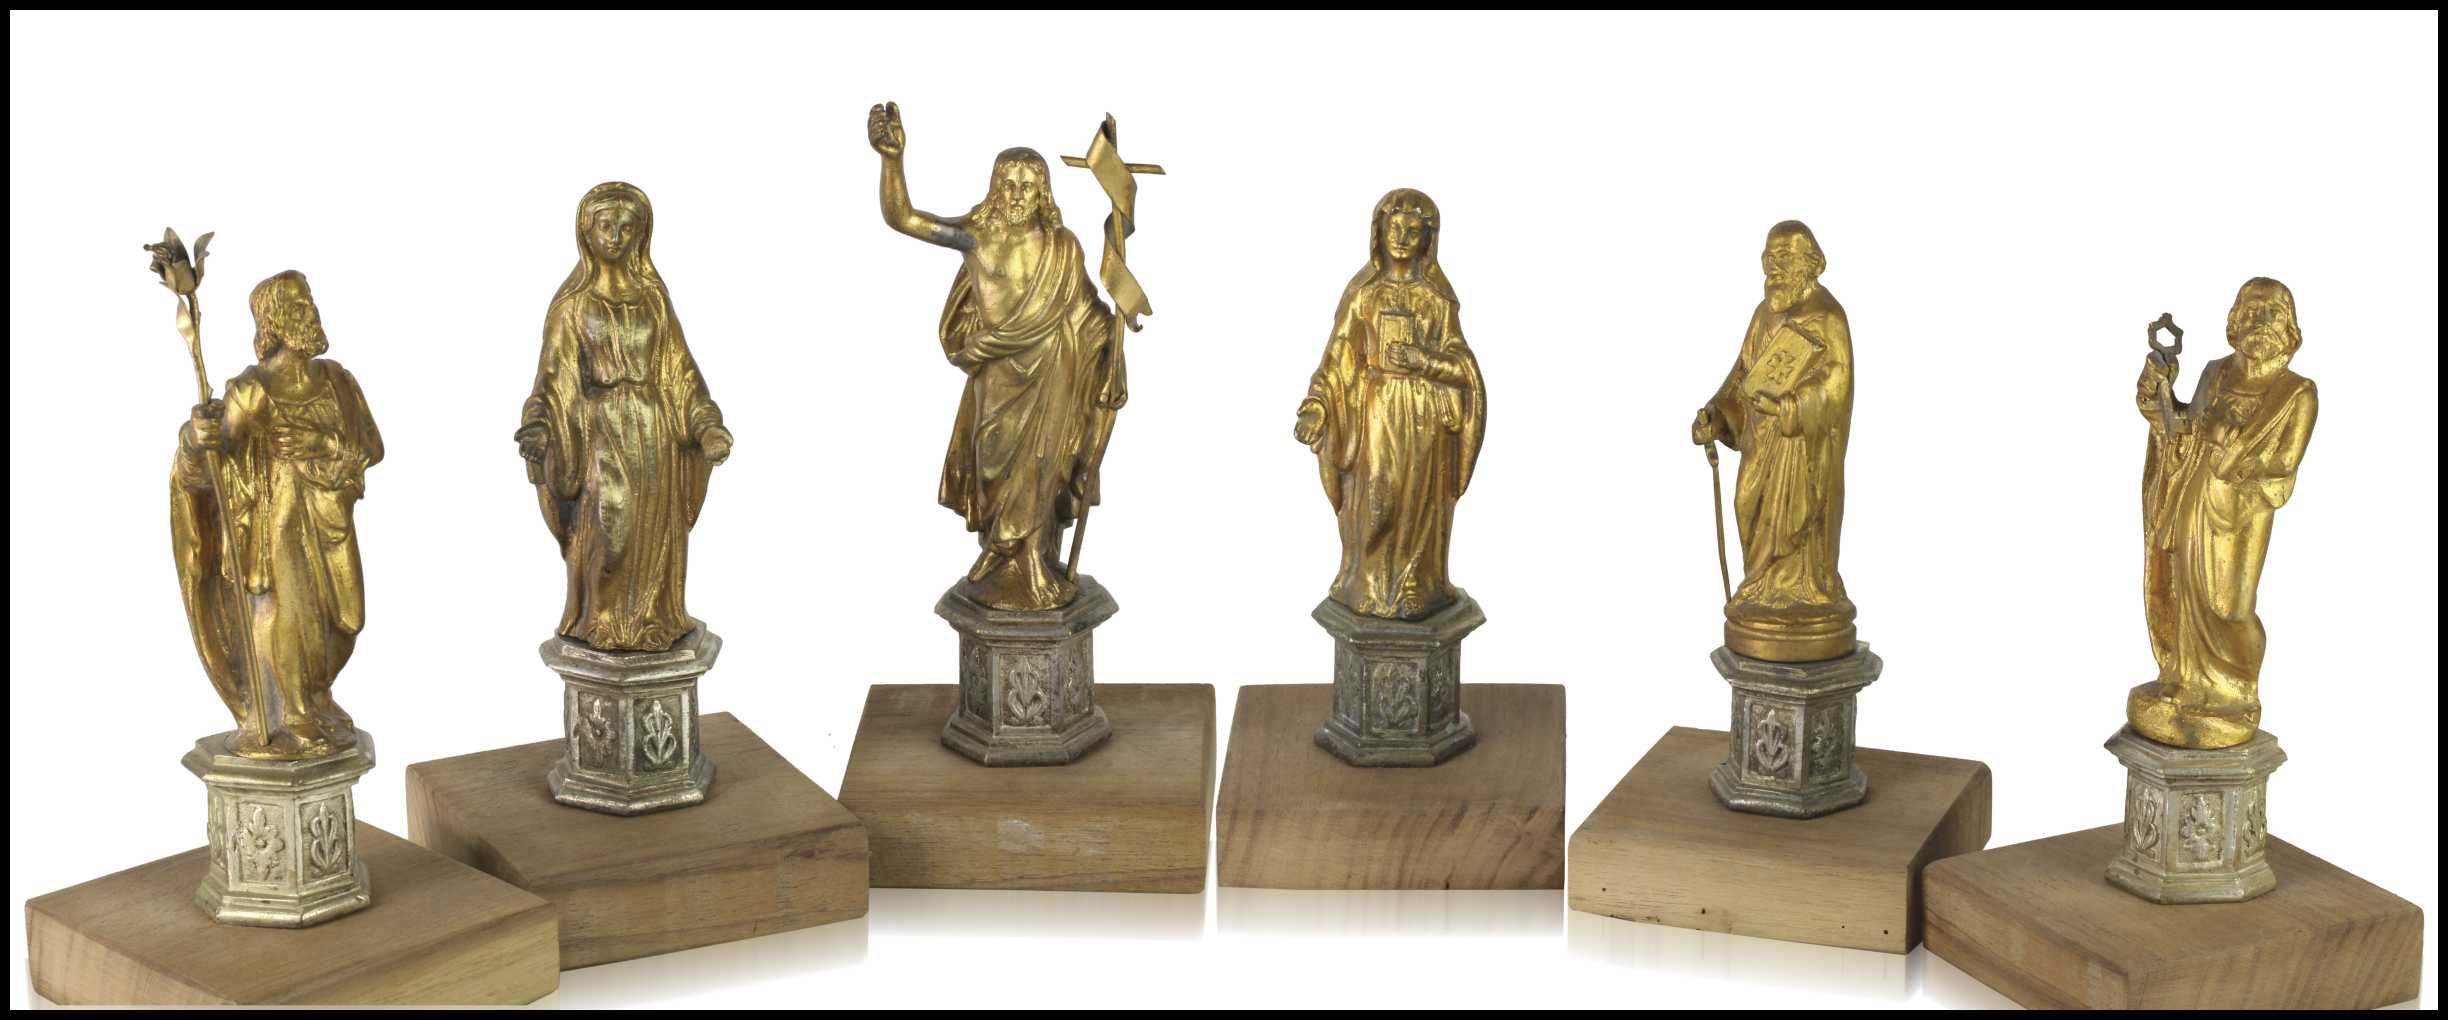 Six devotional bronze sculptures